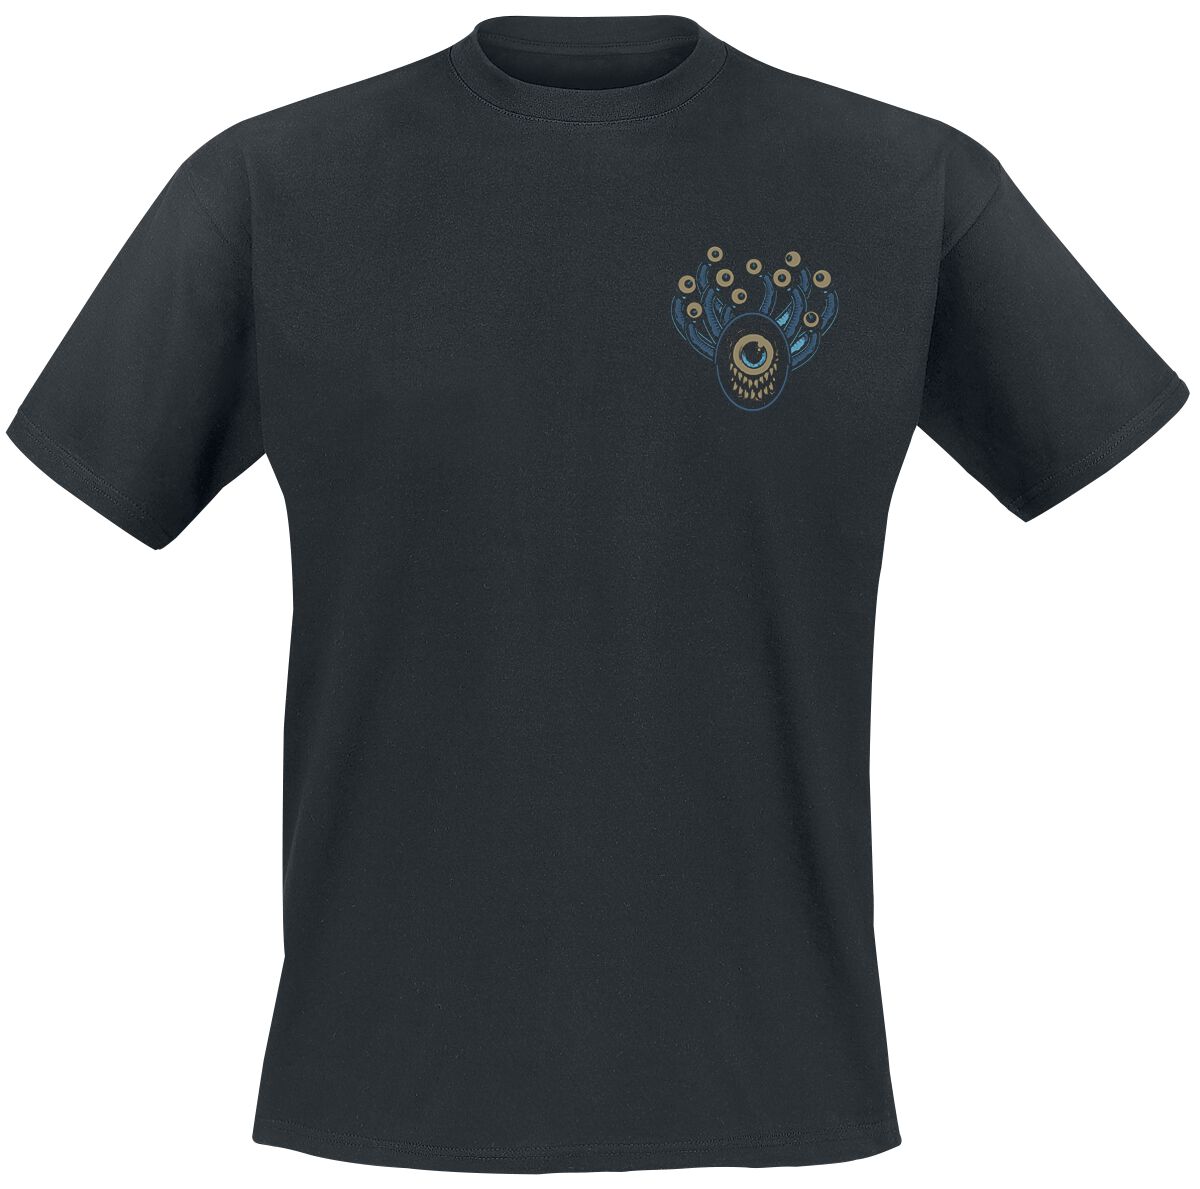 Dungeons and Dragons - Gaming T-Shirt - Hydro74 - Beholder - S bis XXL - für Männer - Größe S - schwarz  - EMP exklusives Merchandise!